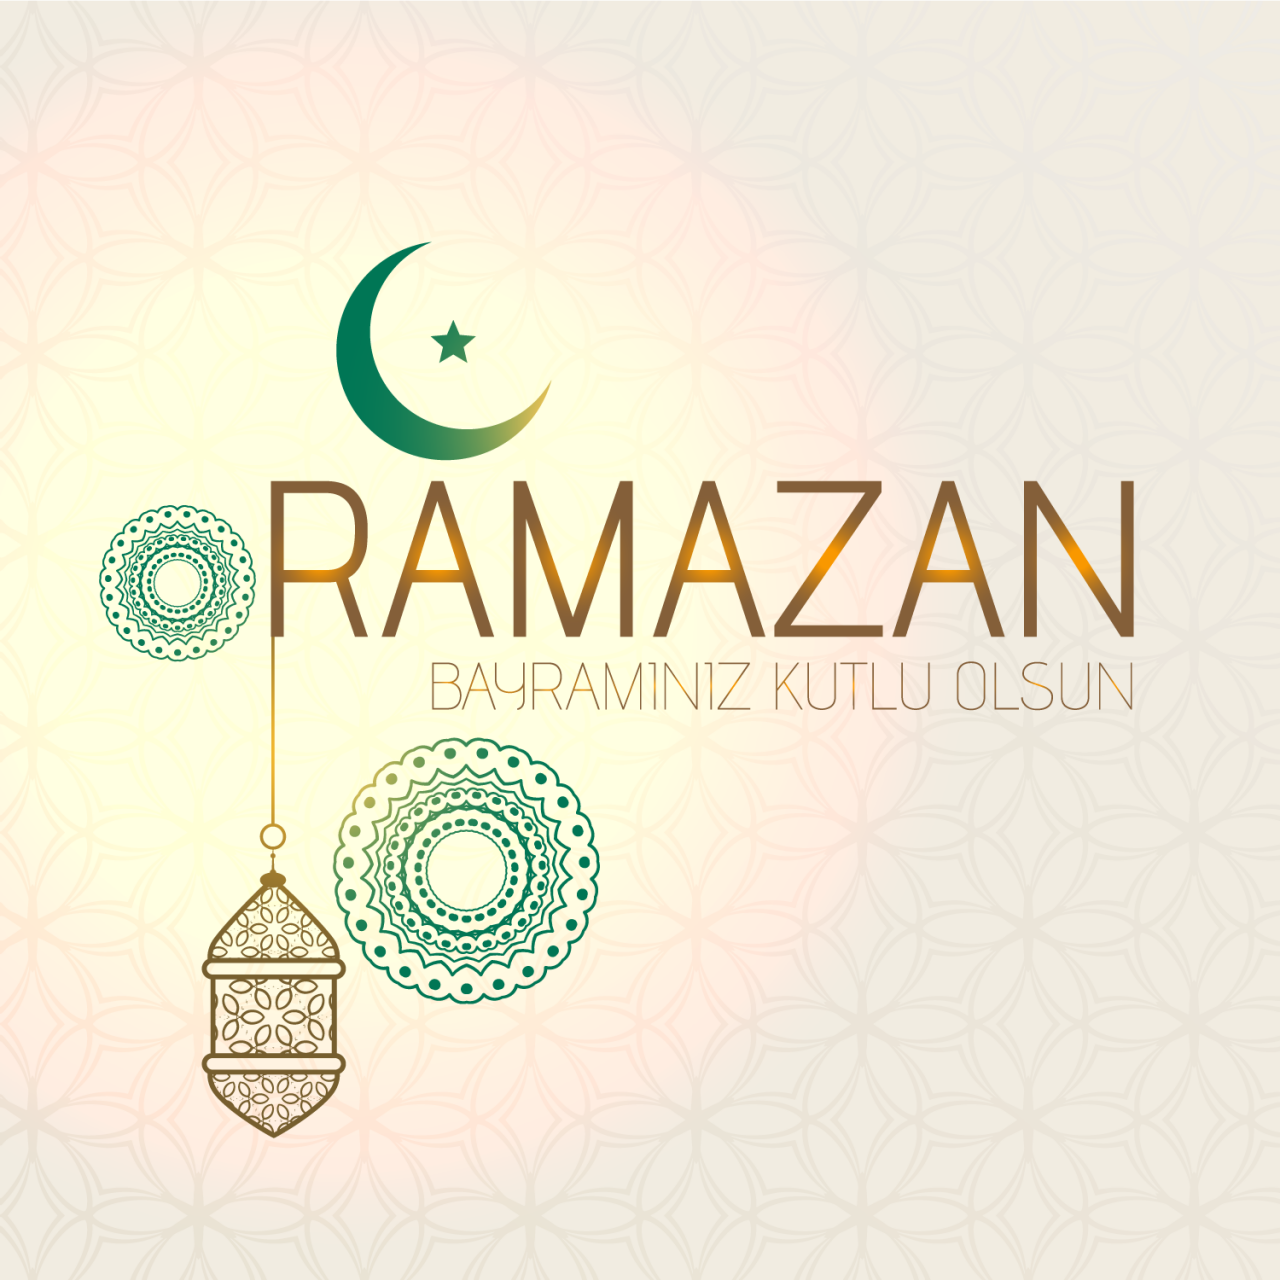 Ramazan Bayramı mesajları (2020) 1